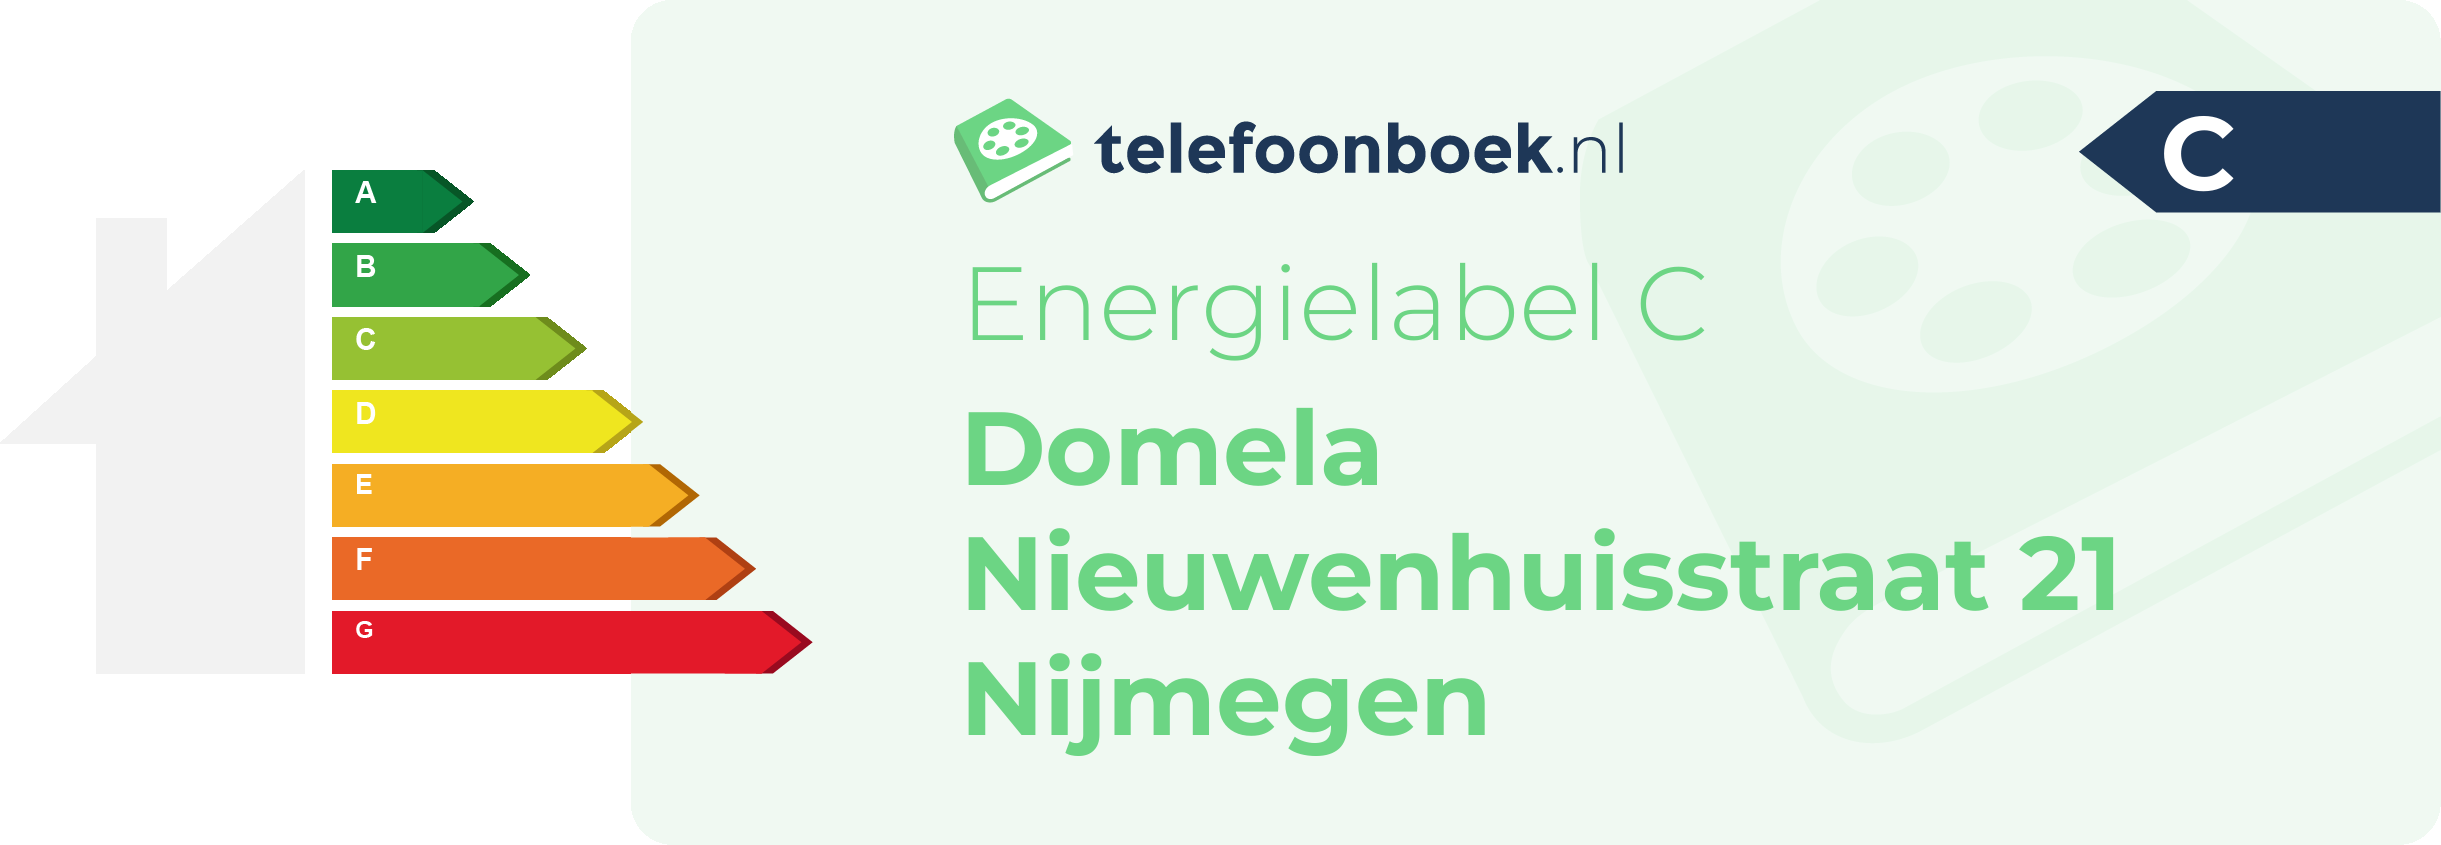 Energielabel Domela Nieuwenhuisstraat 21 Nijmegen